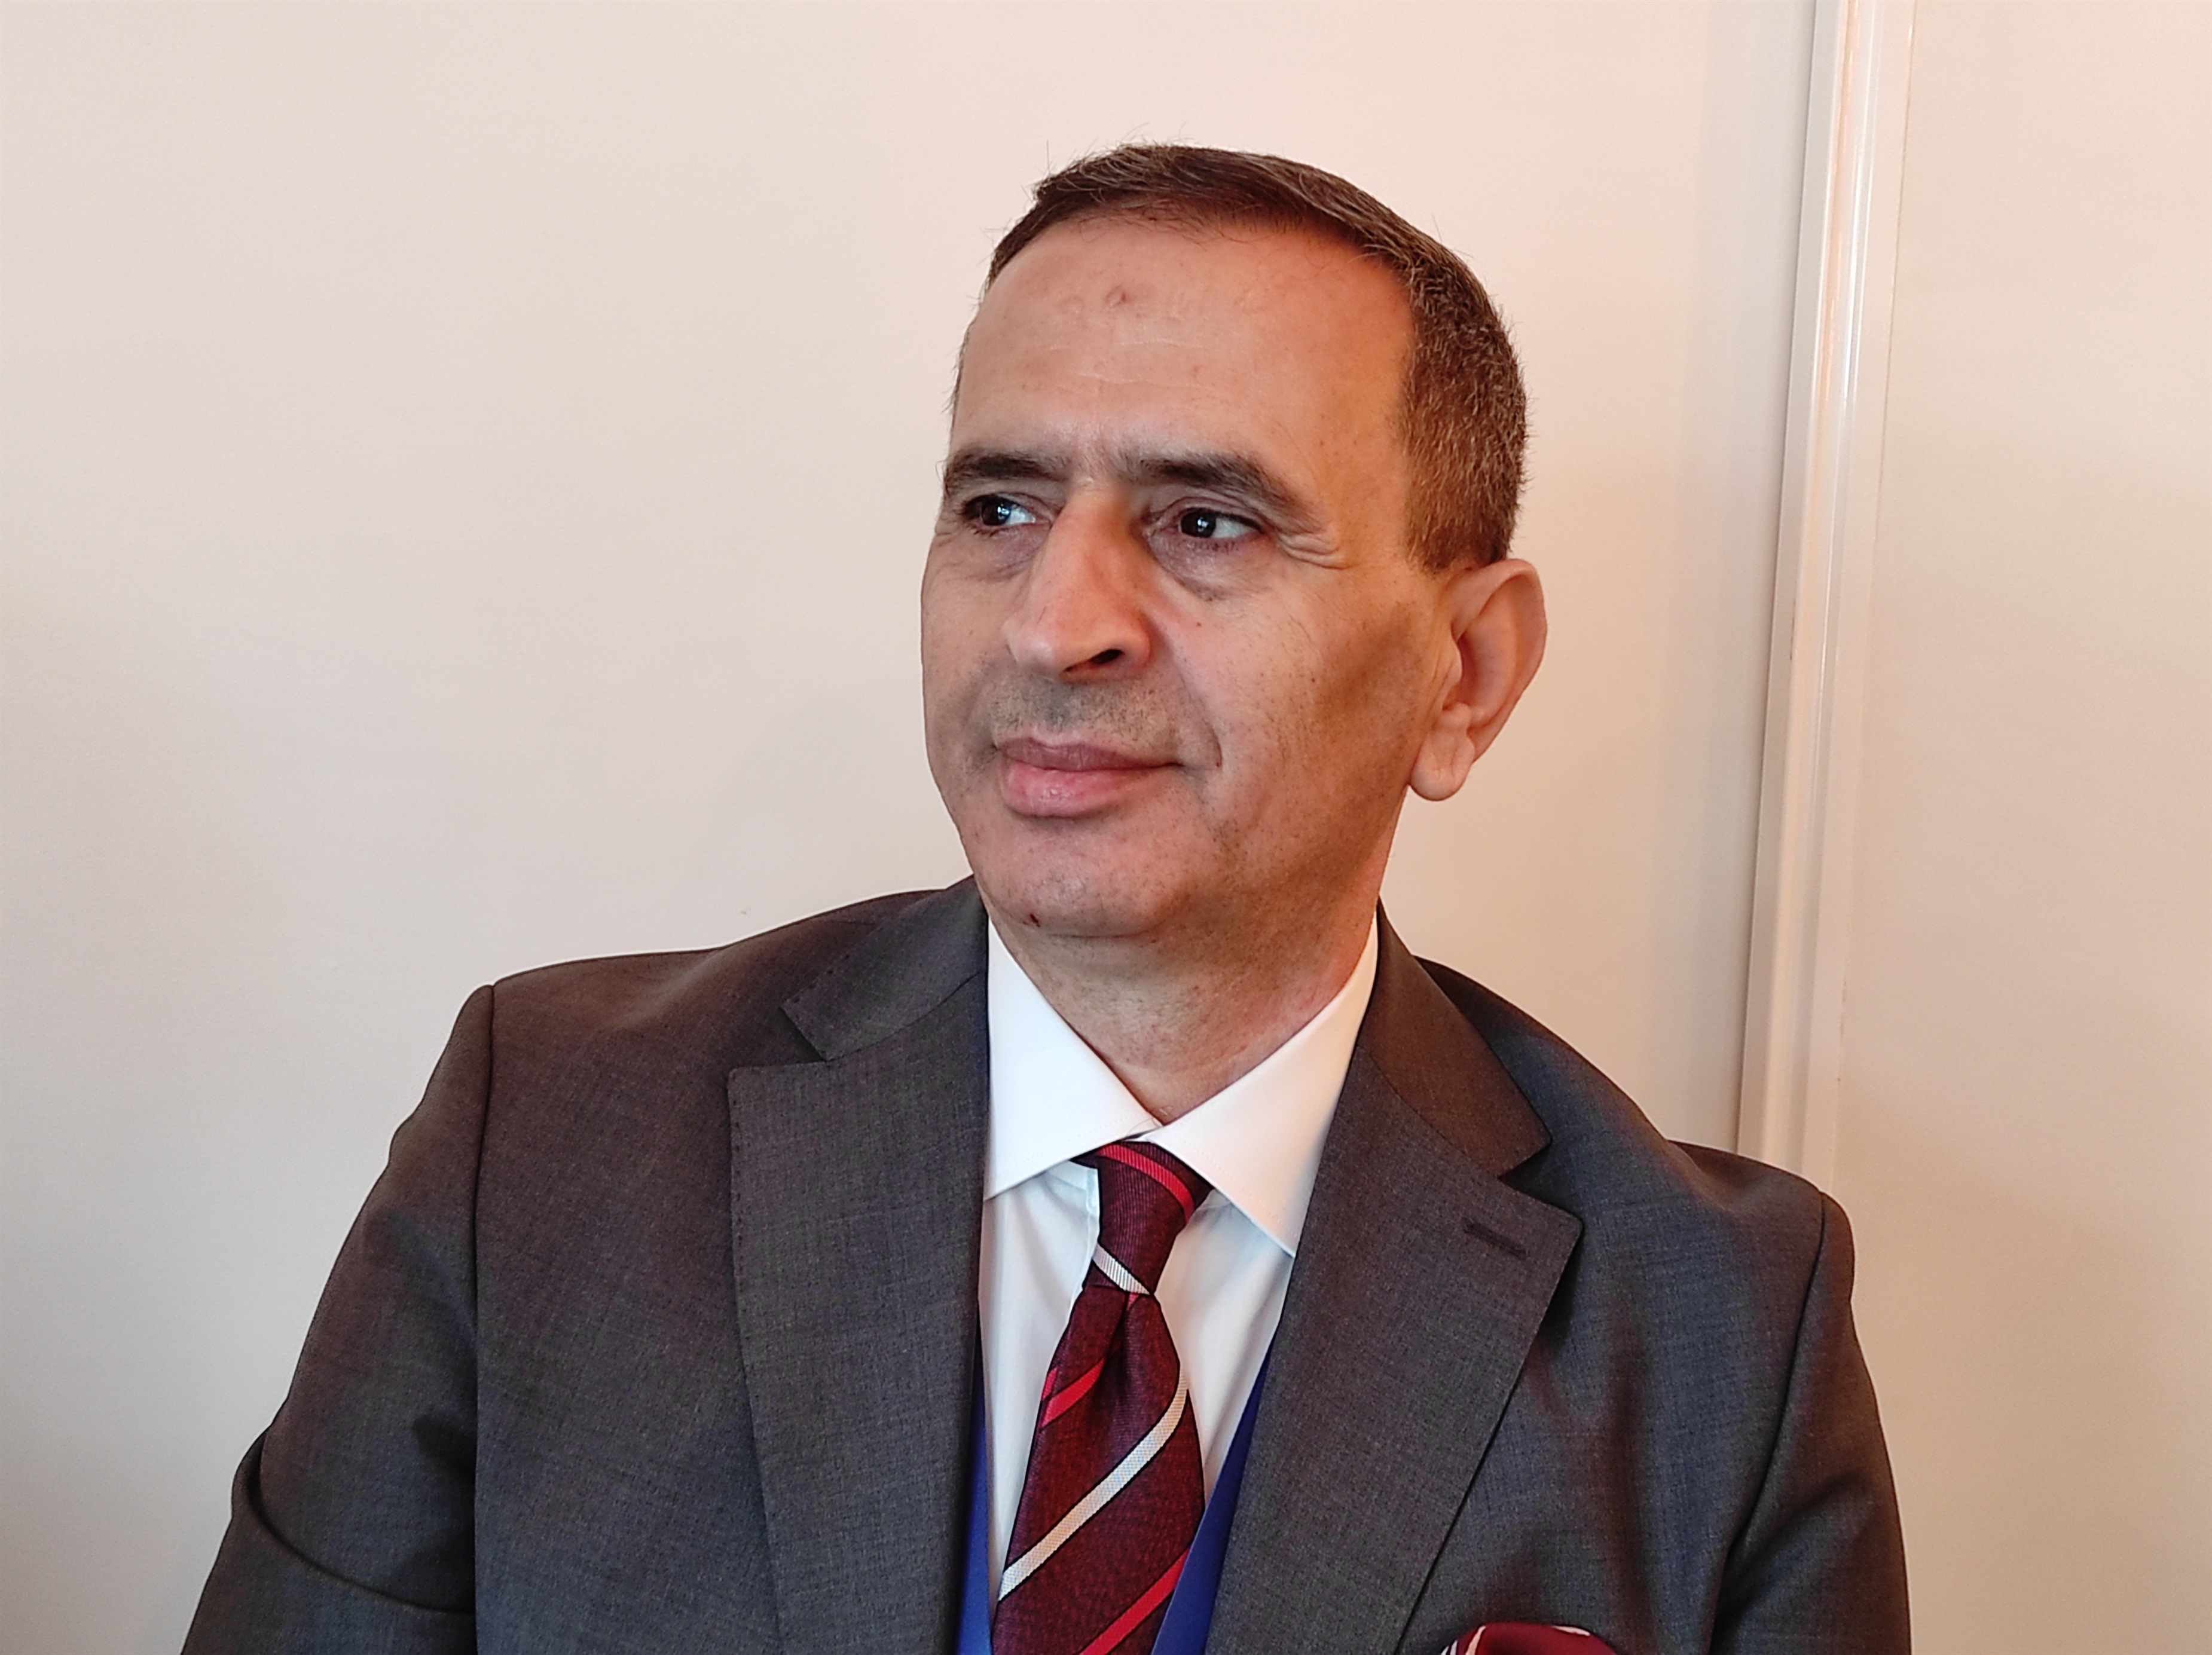 26-11-2021 Maher Madhiub, jefe del departamento de Información y Comunicación del suspendido Parlamento de Túnez
POLITICA AFRICA TÚNEZ INTERNACIONAL
